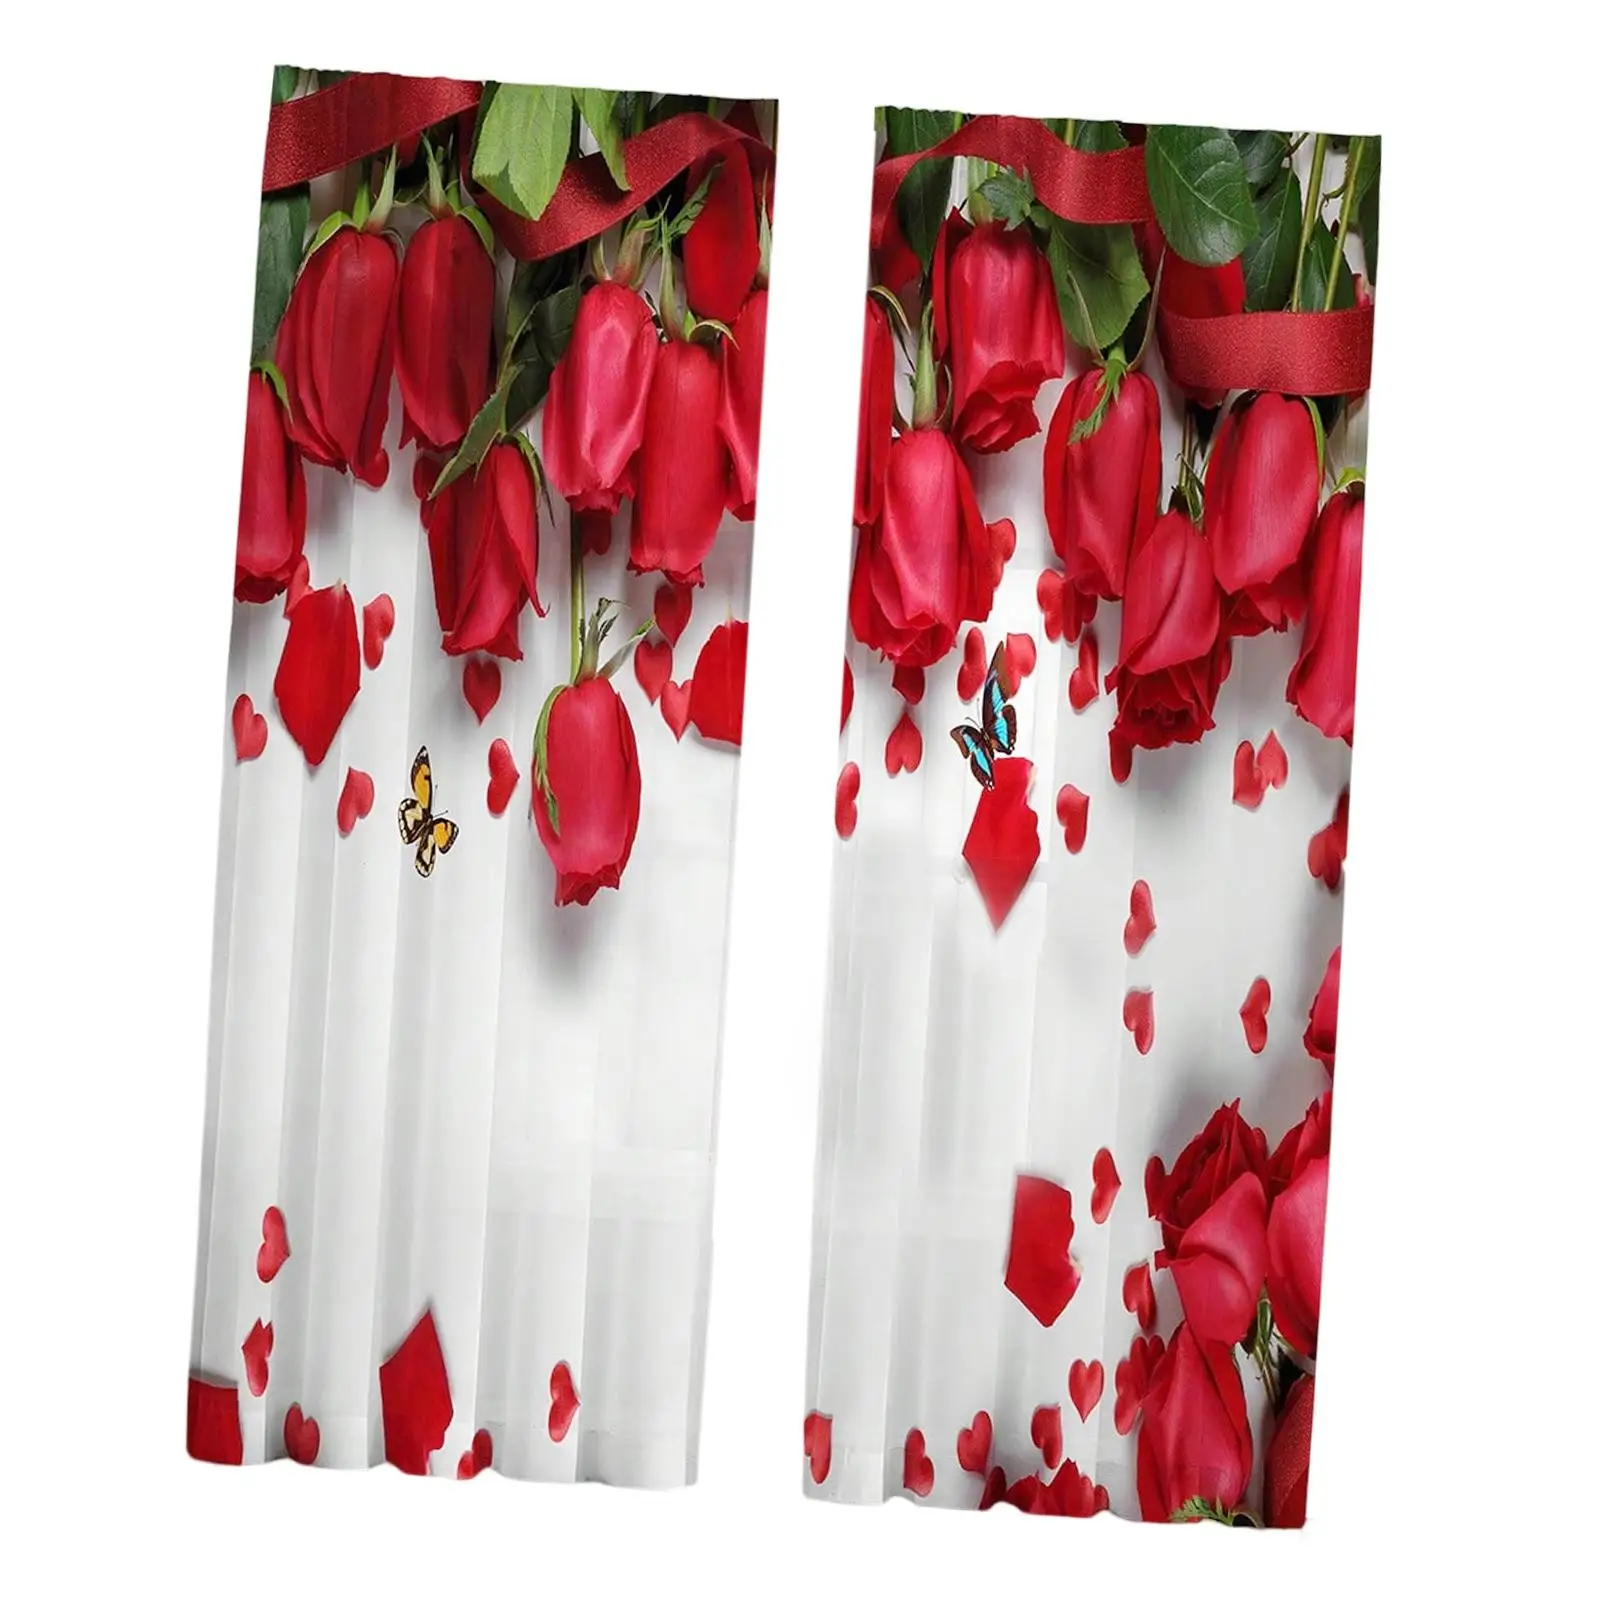 Printed Sheer Curtains Elegant 2 Panels 1 Pair Rose Floral Print 52 x 95 Inches Semitransparent Sheer Drapes Draperies for Yard